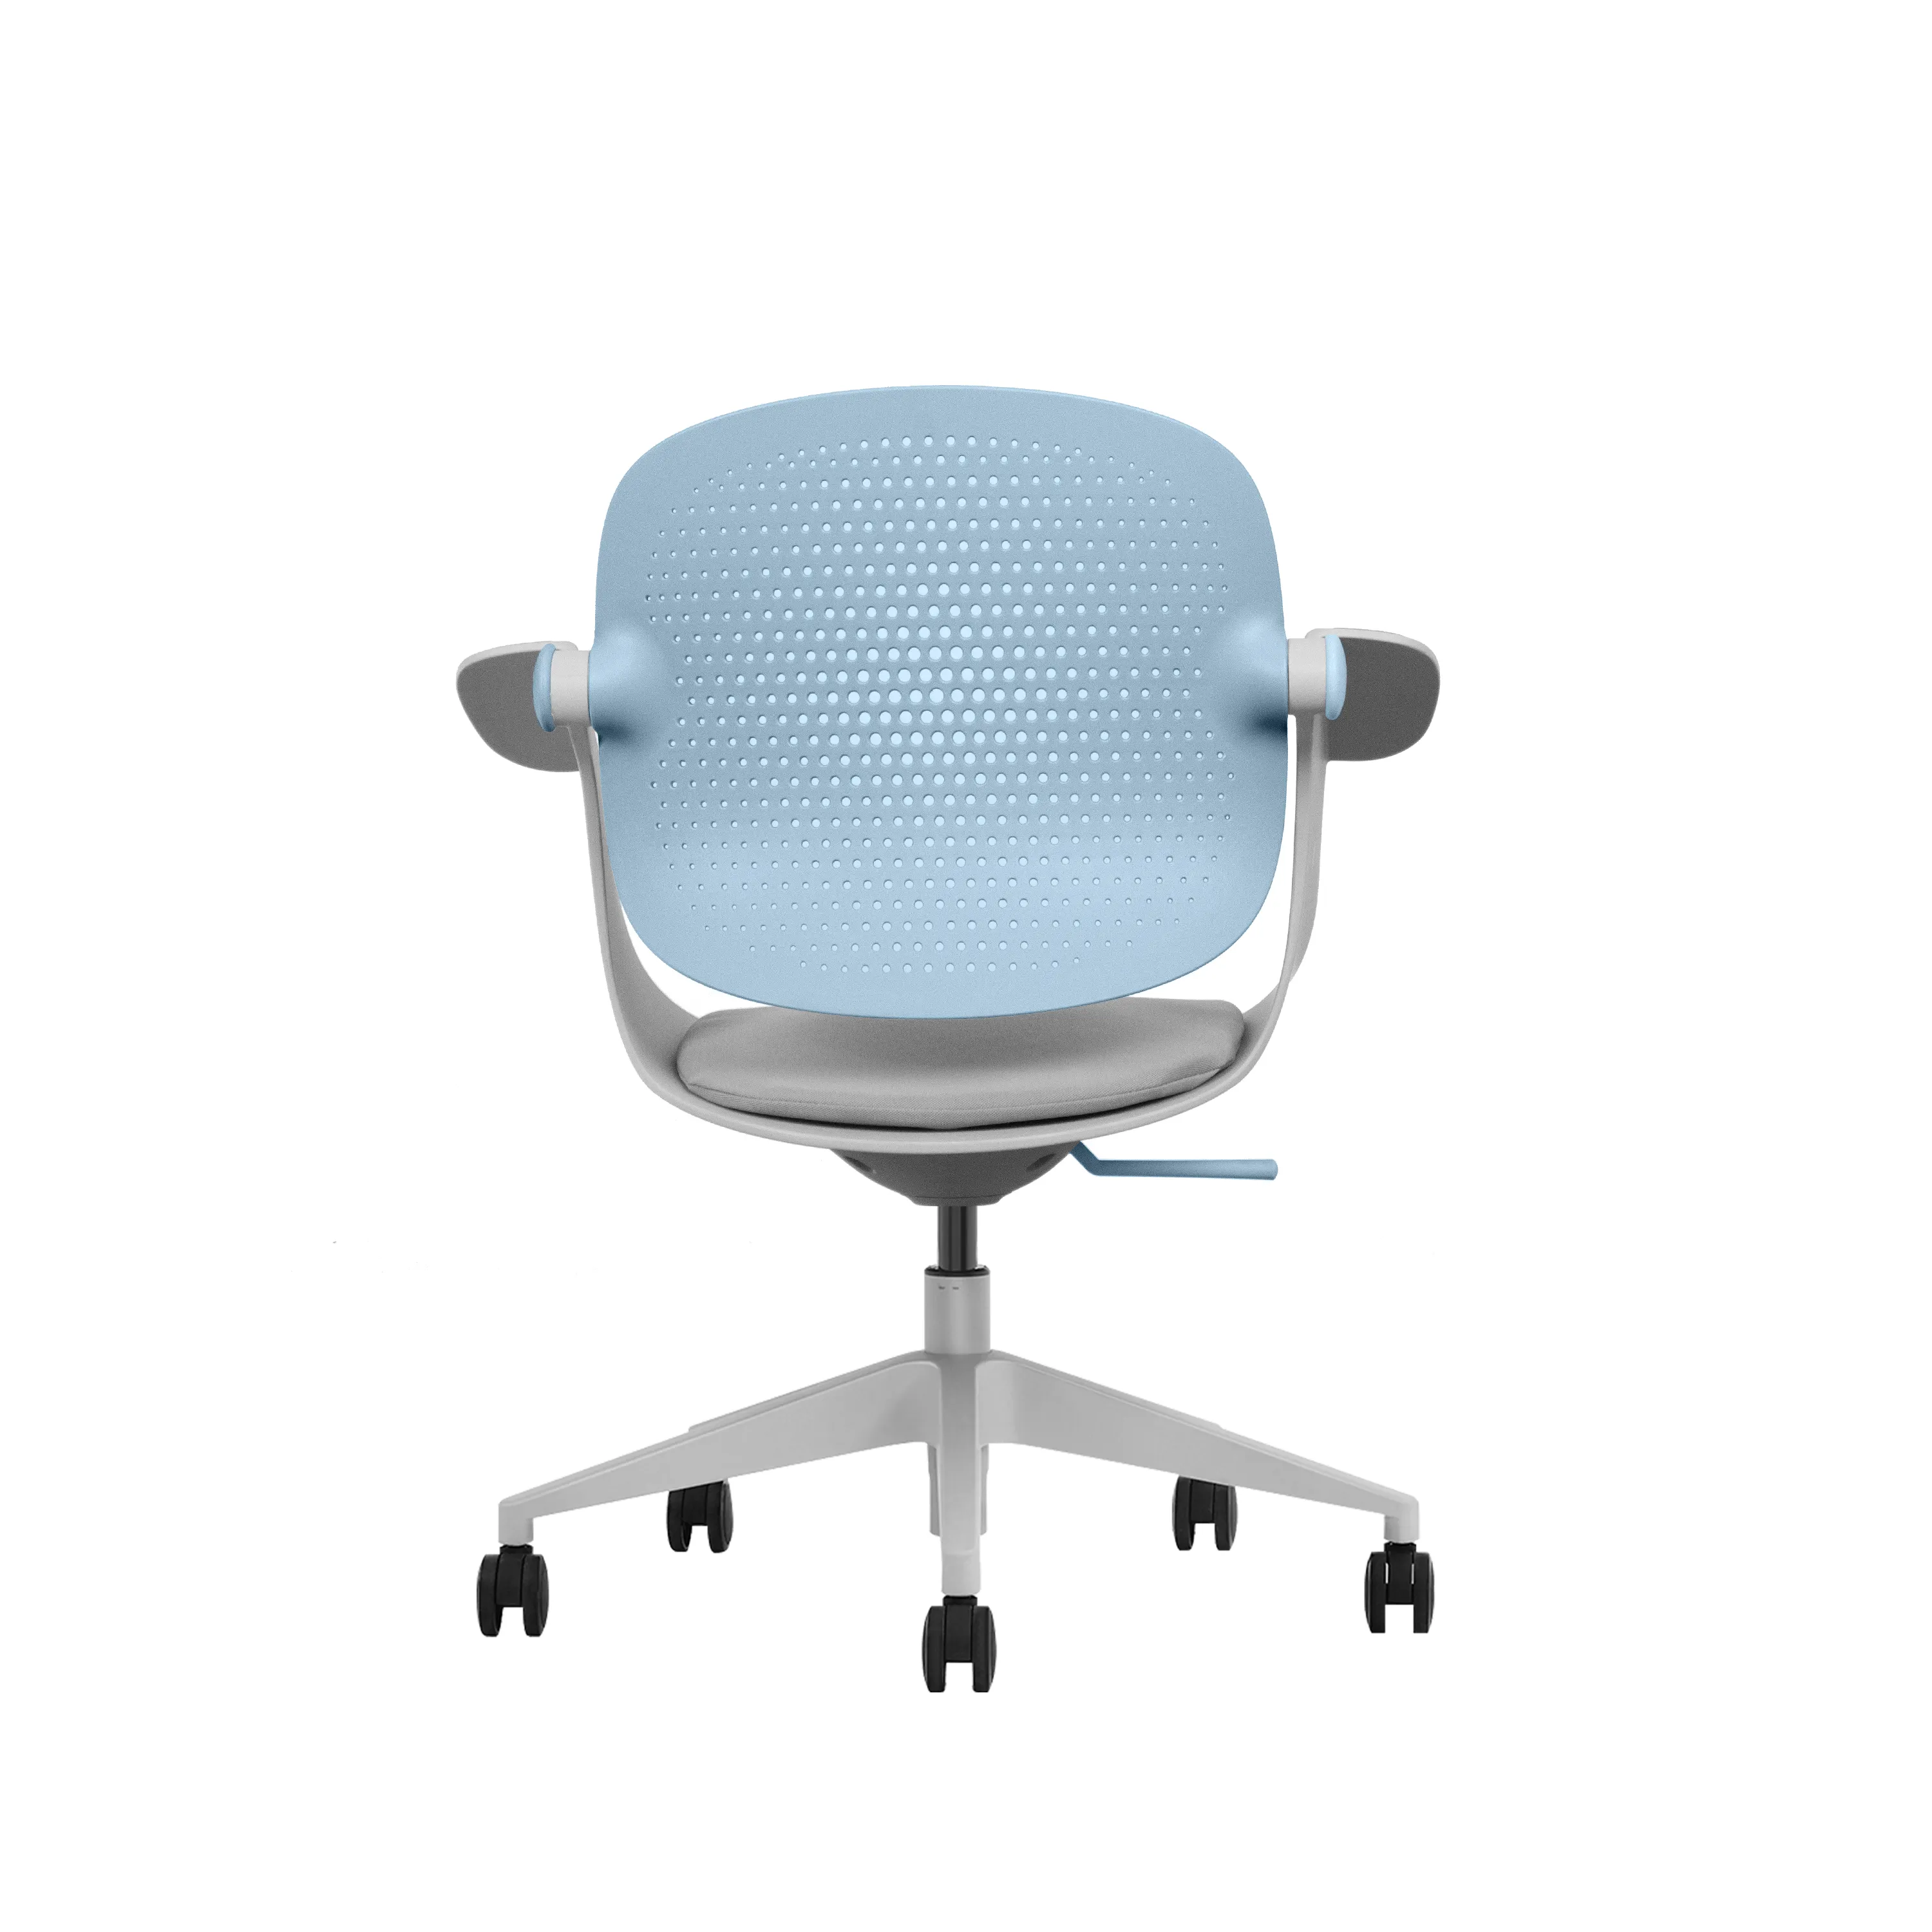 Premium all'ingrosso sedia da ufficio in Mesh comodo girevole per il lavoro moderno uso domestico per il tempo libero in una varietà di tessuto colorato